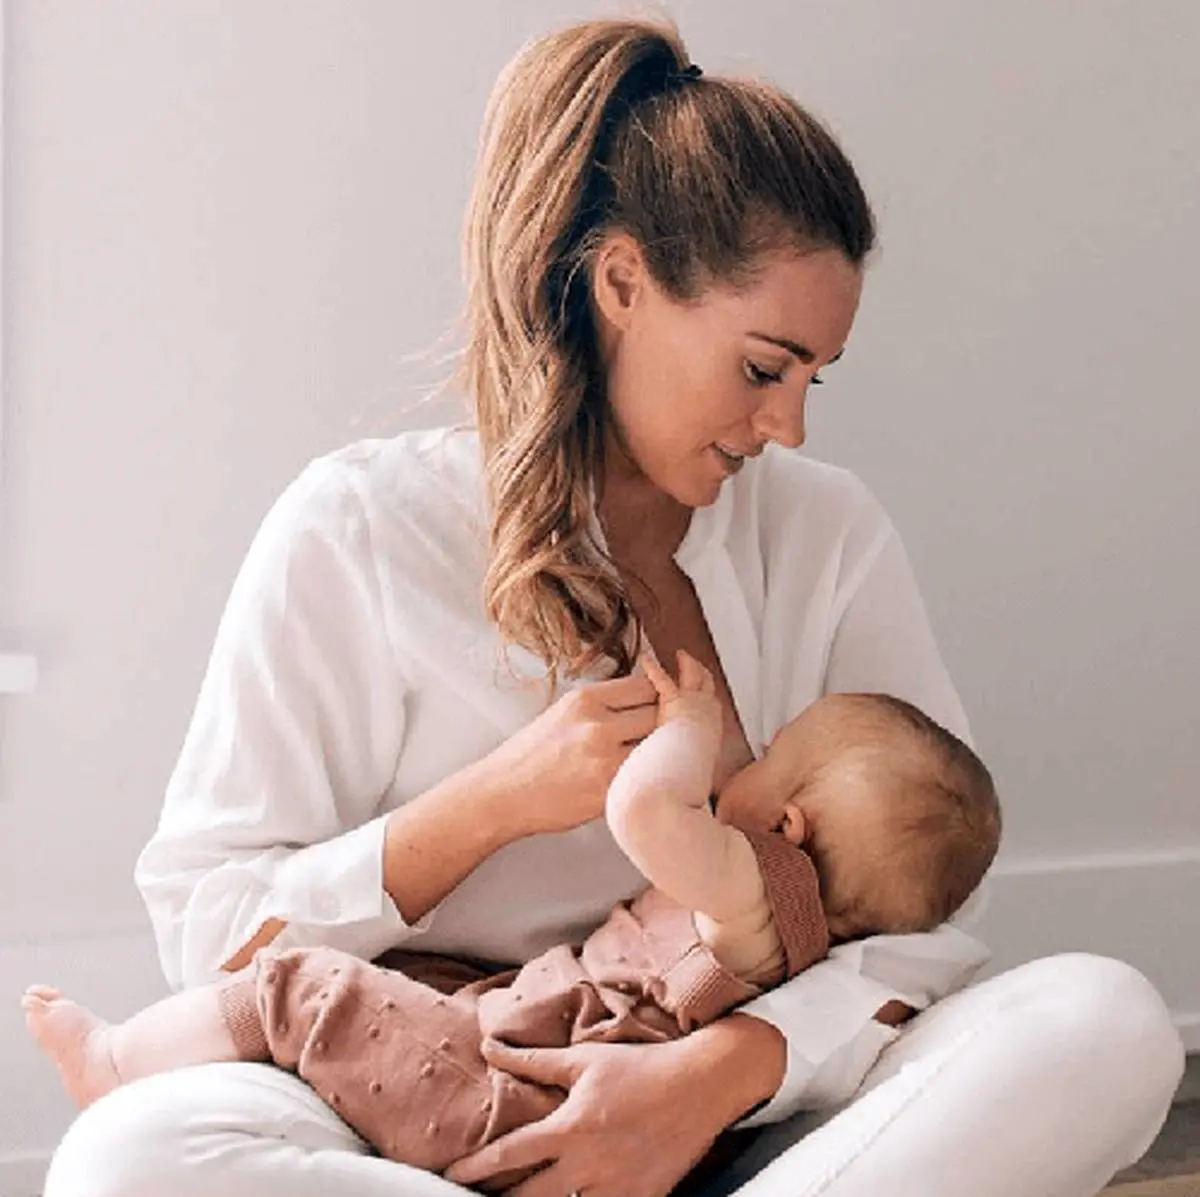 چرا وقتی نوزاد گریه می کند شیر مادر جاری می شود؟
